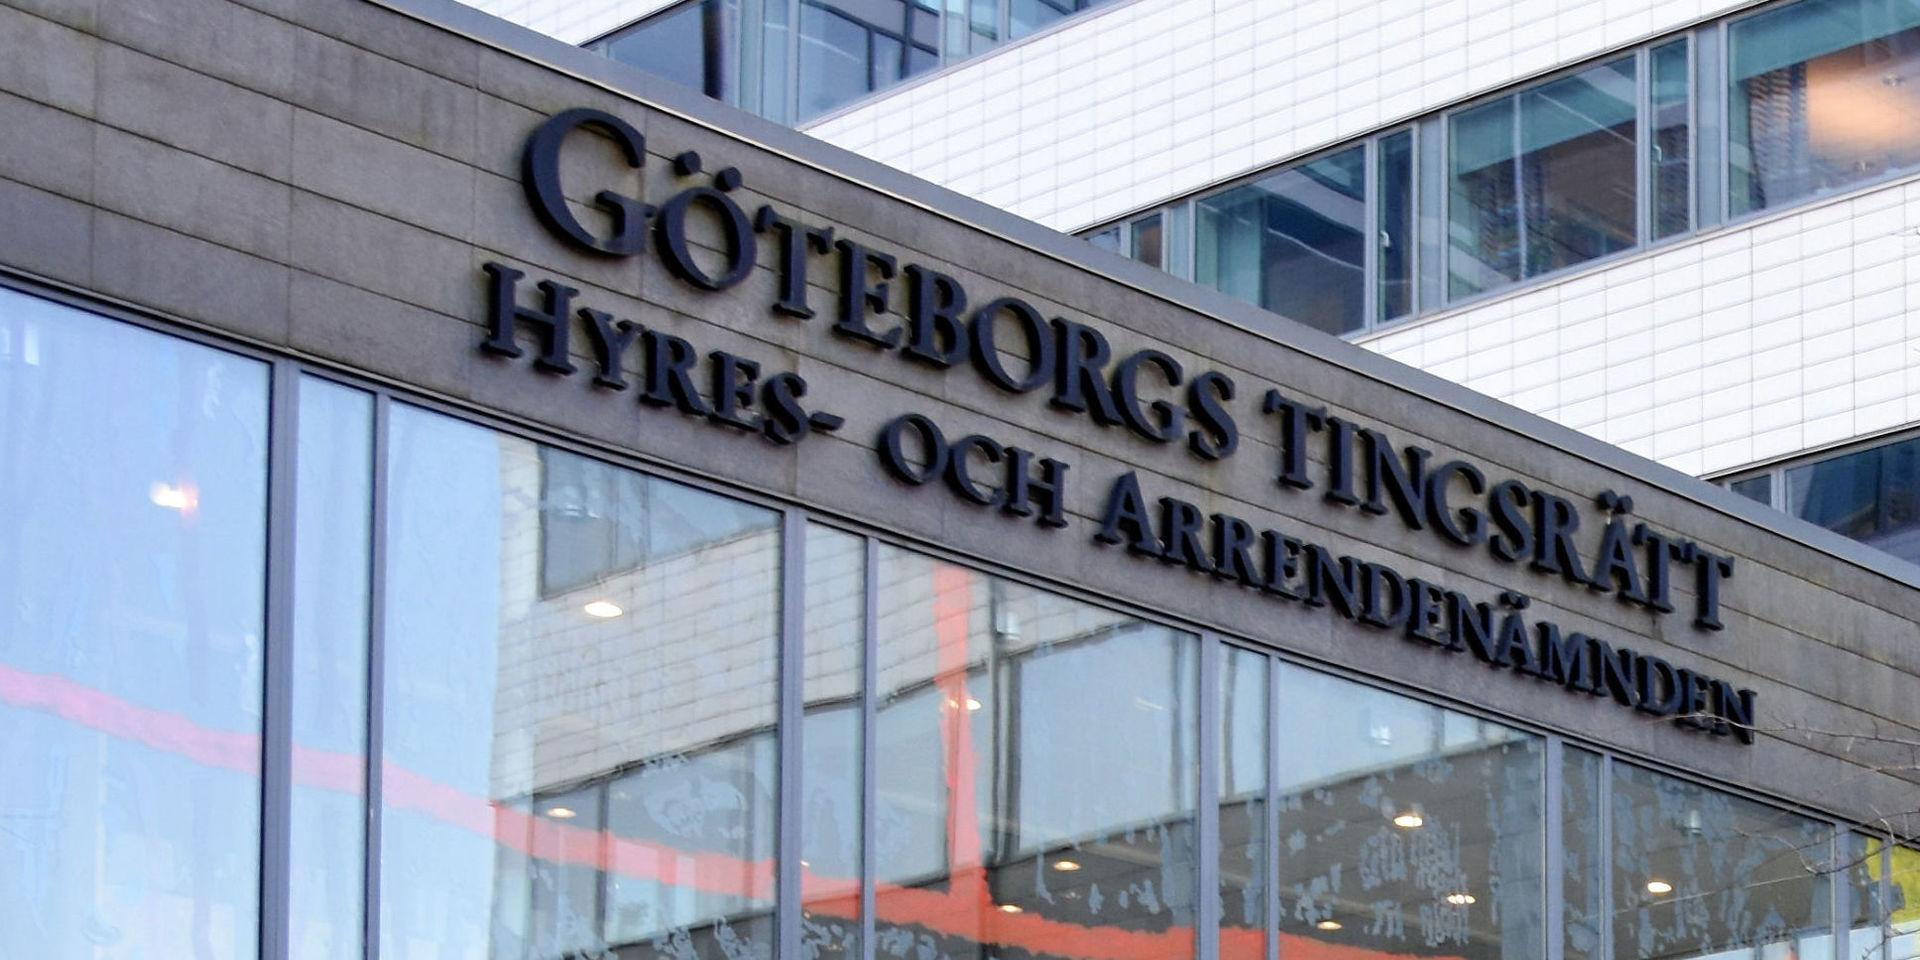 Hovrätten håller förhandlingen kring gårdsmordet i Torup i en säkerhetssal på Göteborgs tingsrätt.